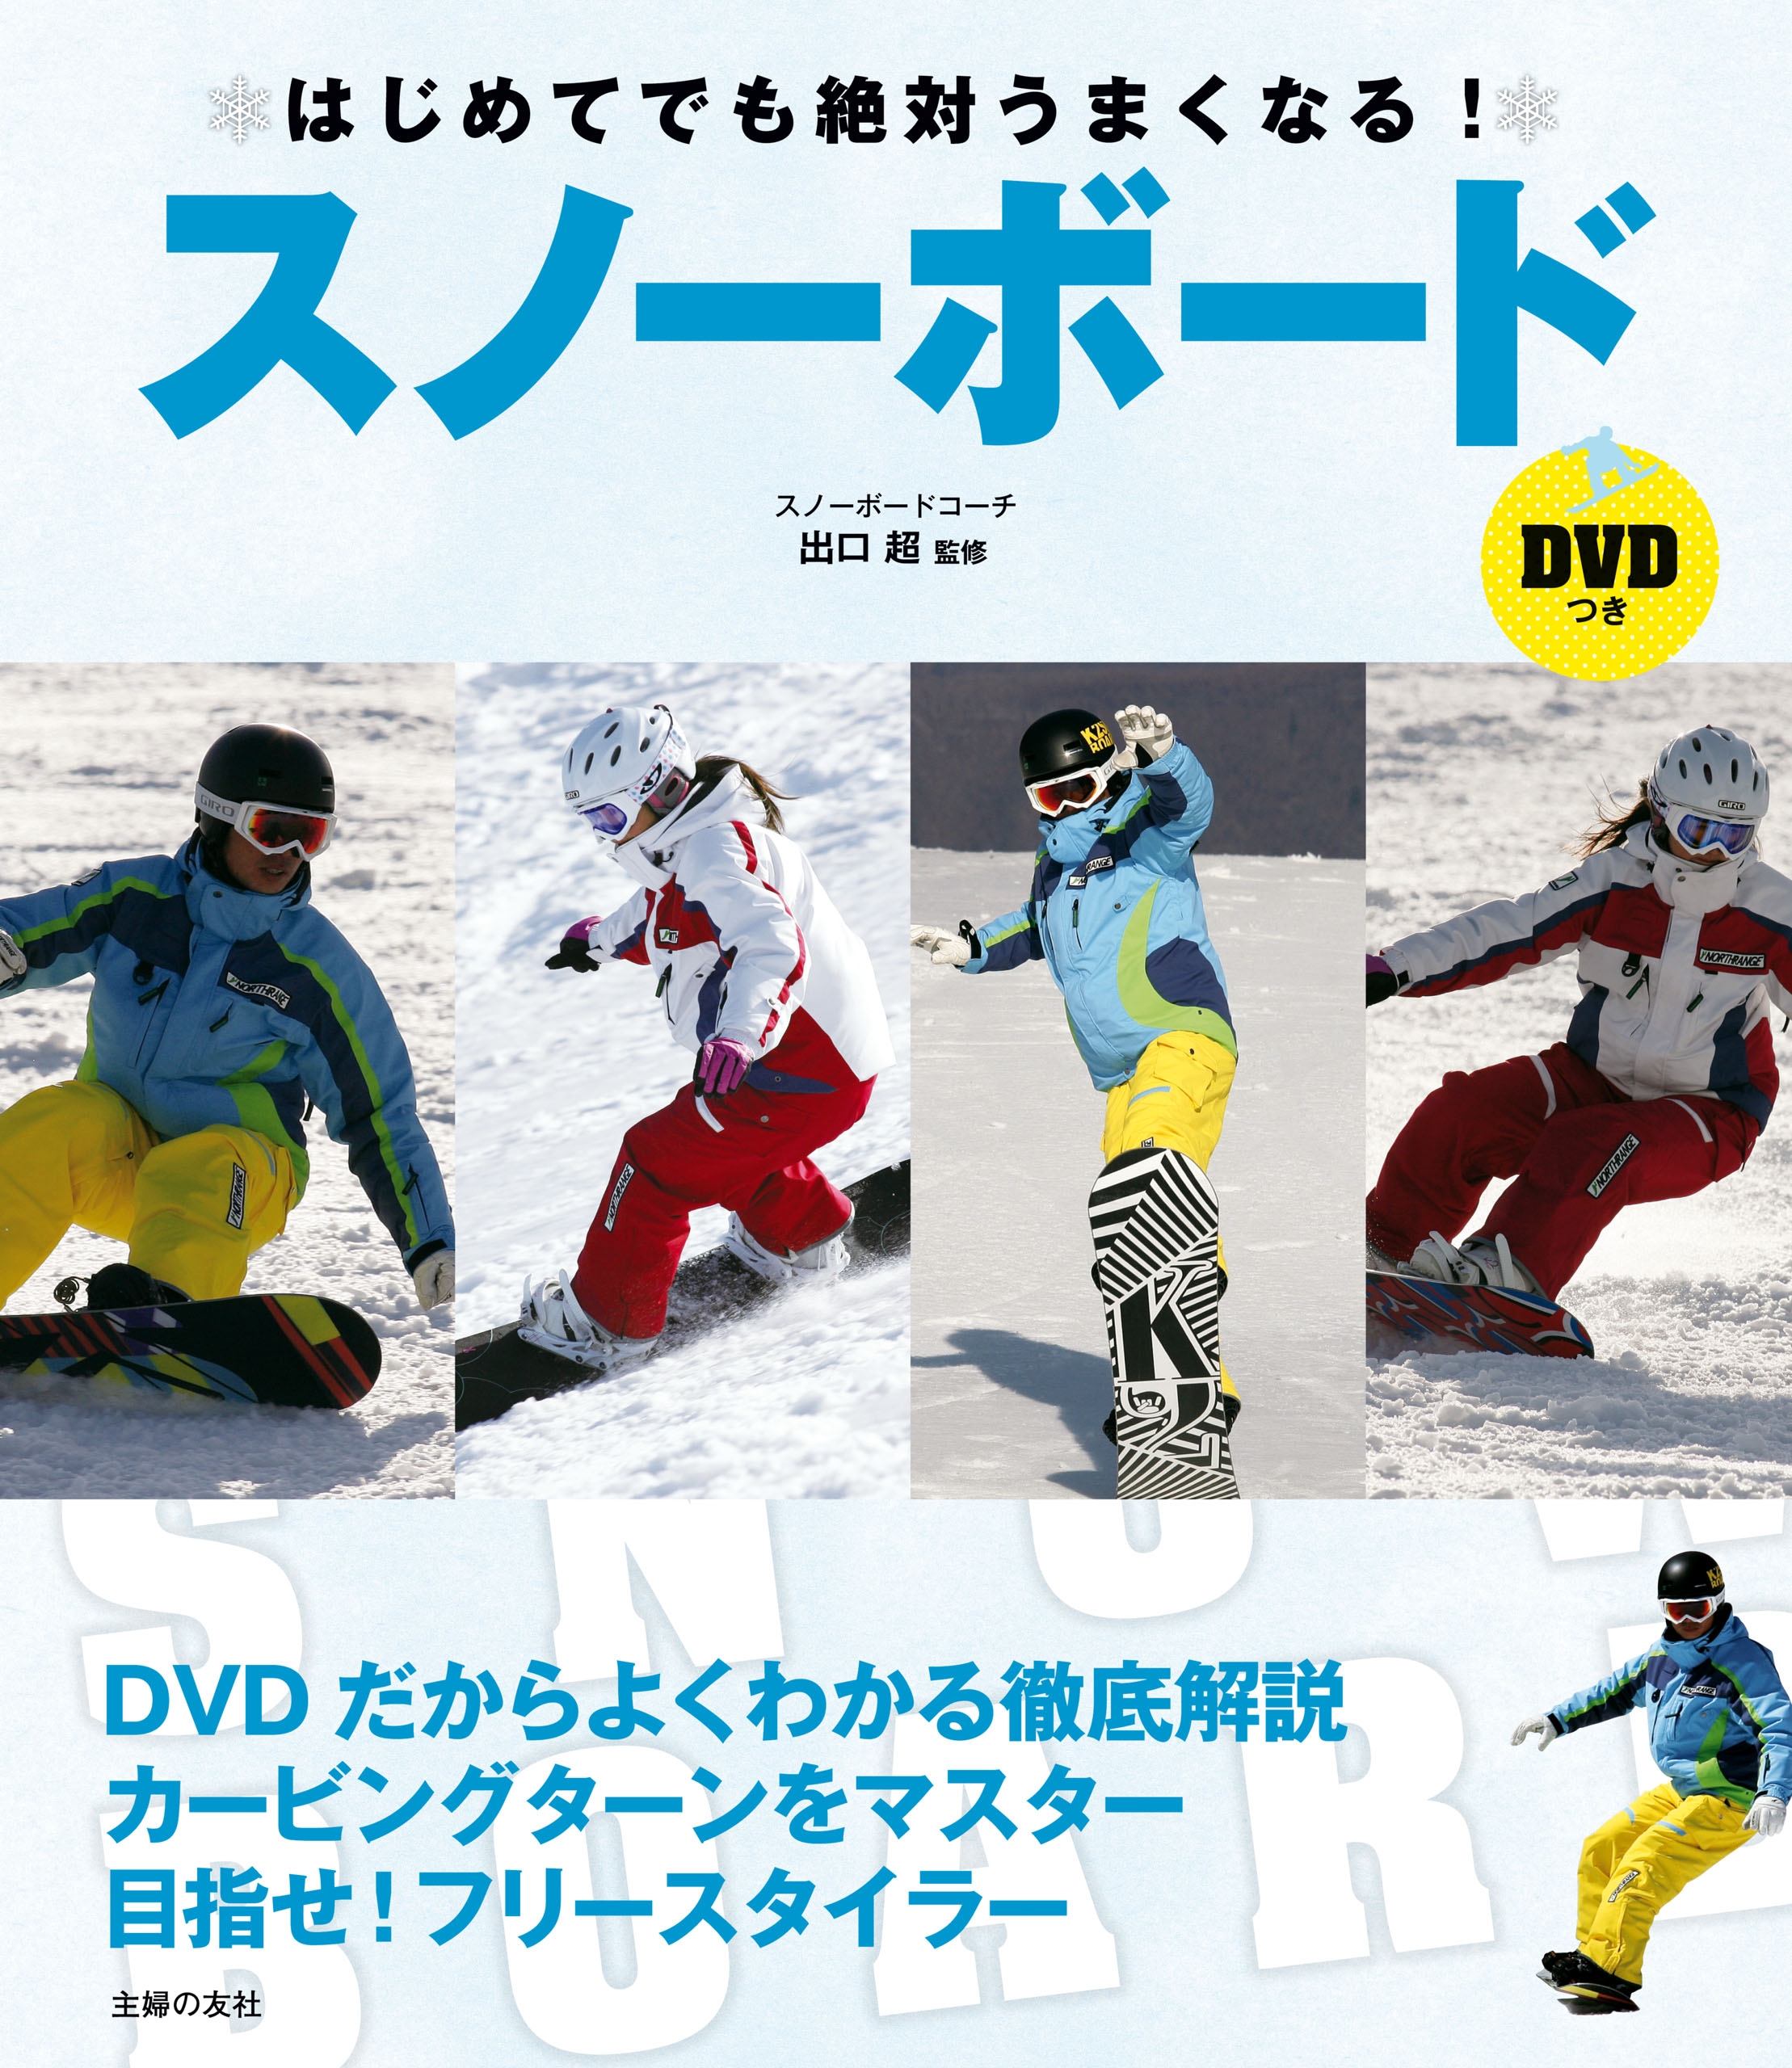 スノーボード DVD - ブルーレイ